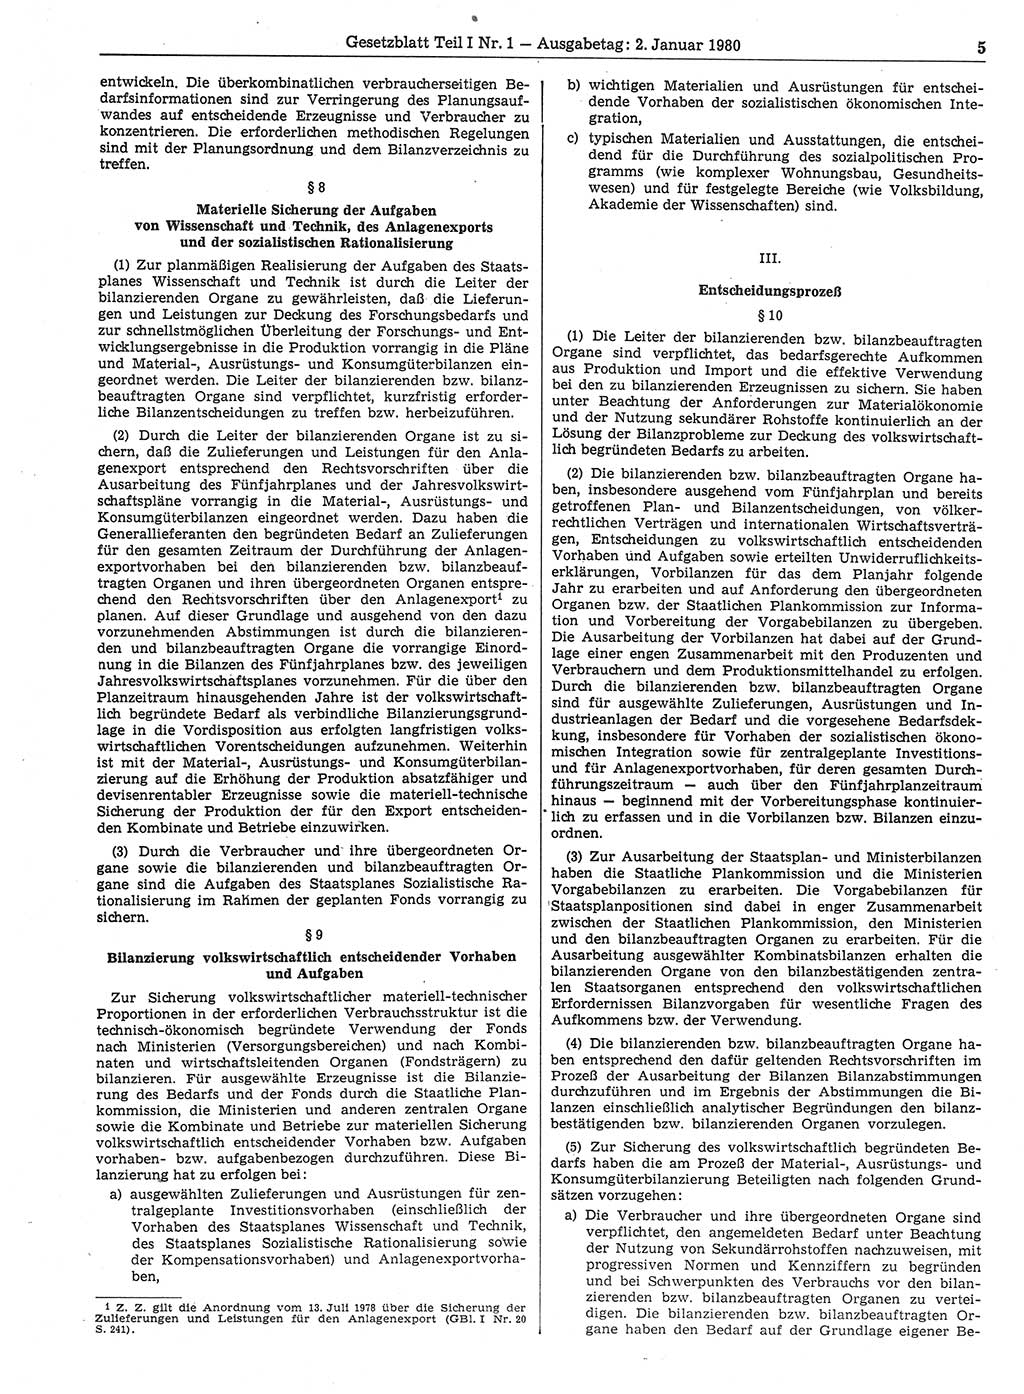 Gesetzblatt (GBl.) der Deutschen Demokratischen Republik (DDR) Teil Ⅰ 1980, Seite 5 (GBl. DDR Ⅰ 1980, S. 5)